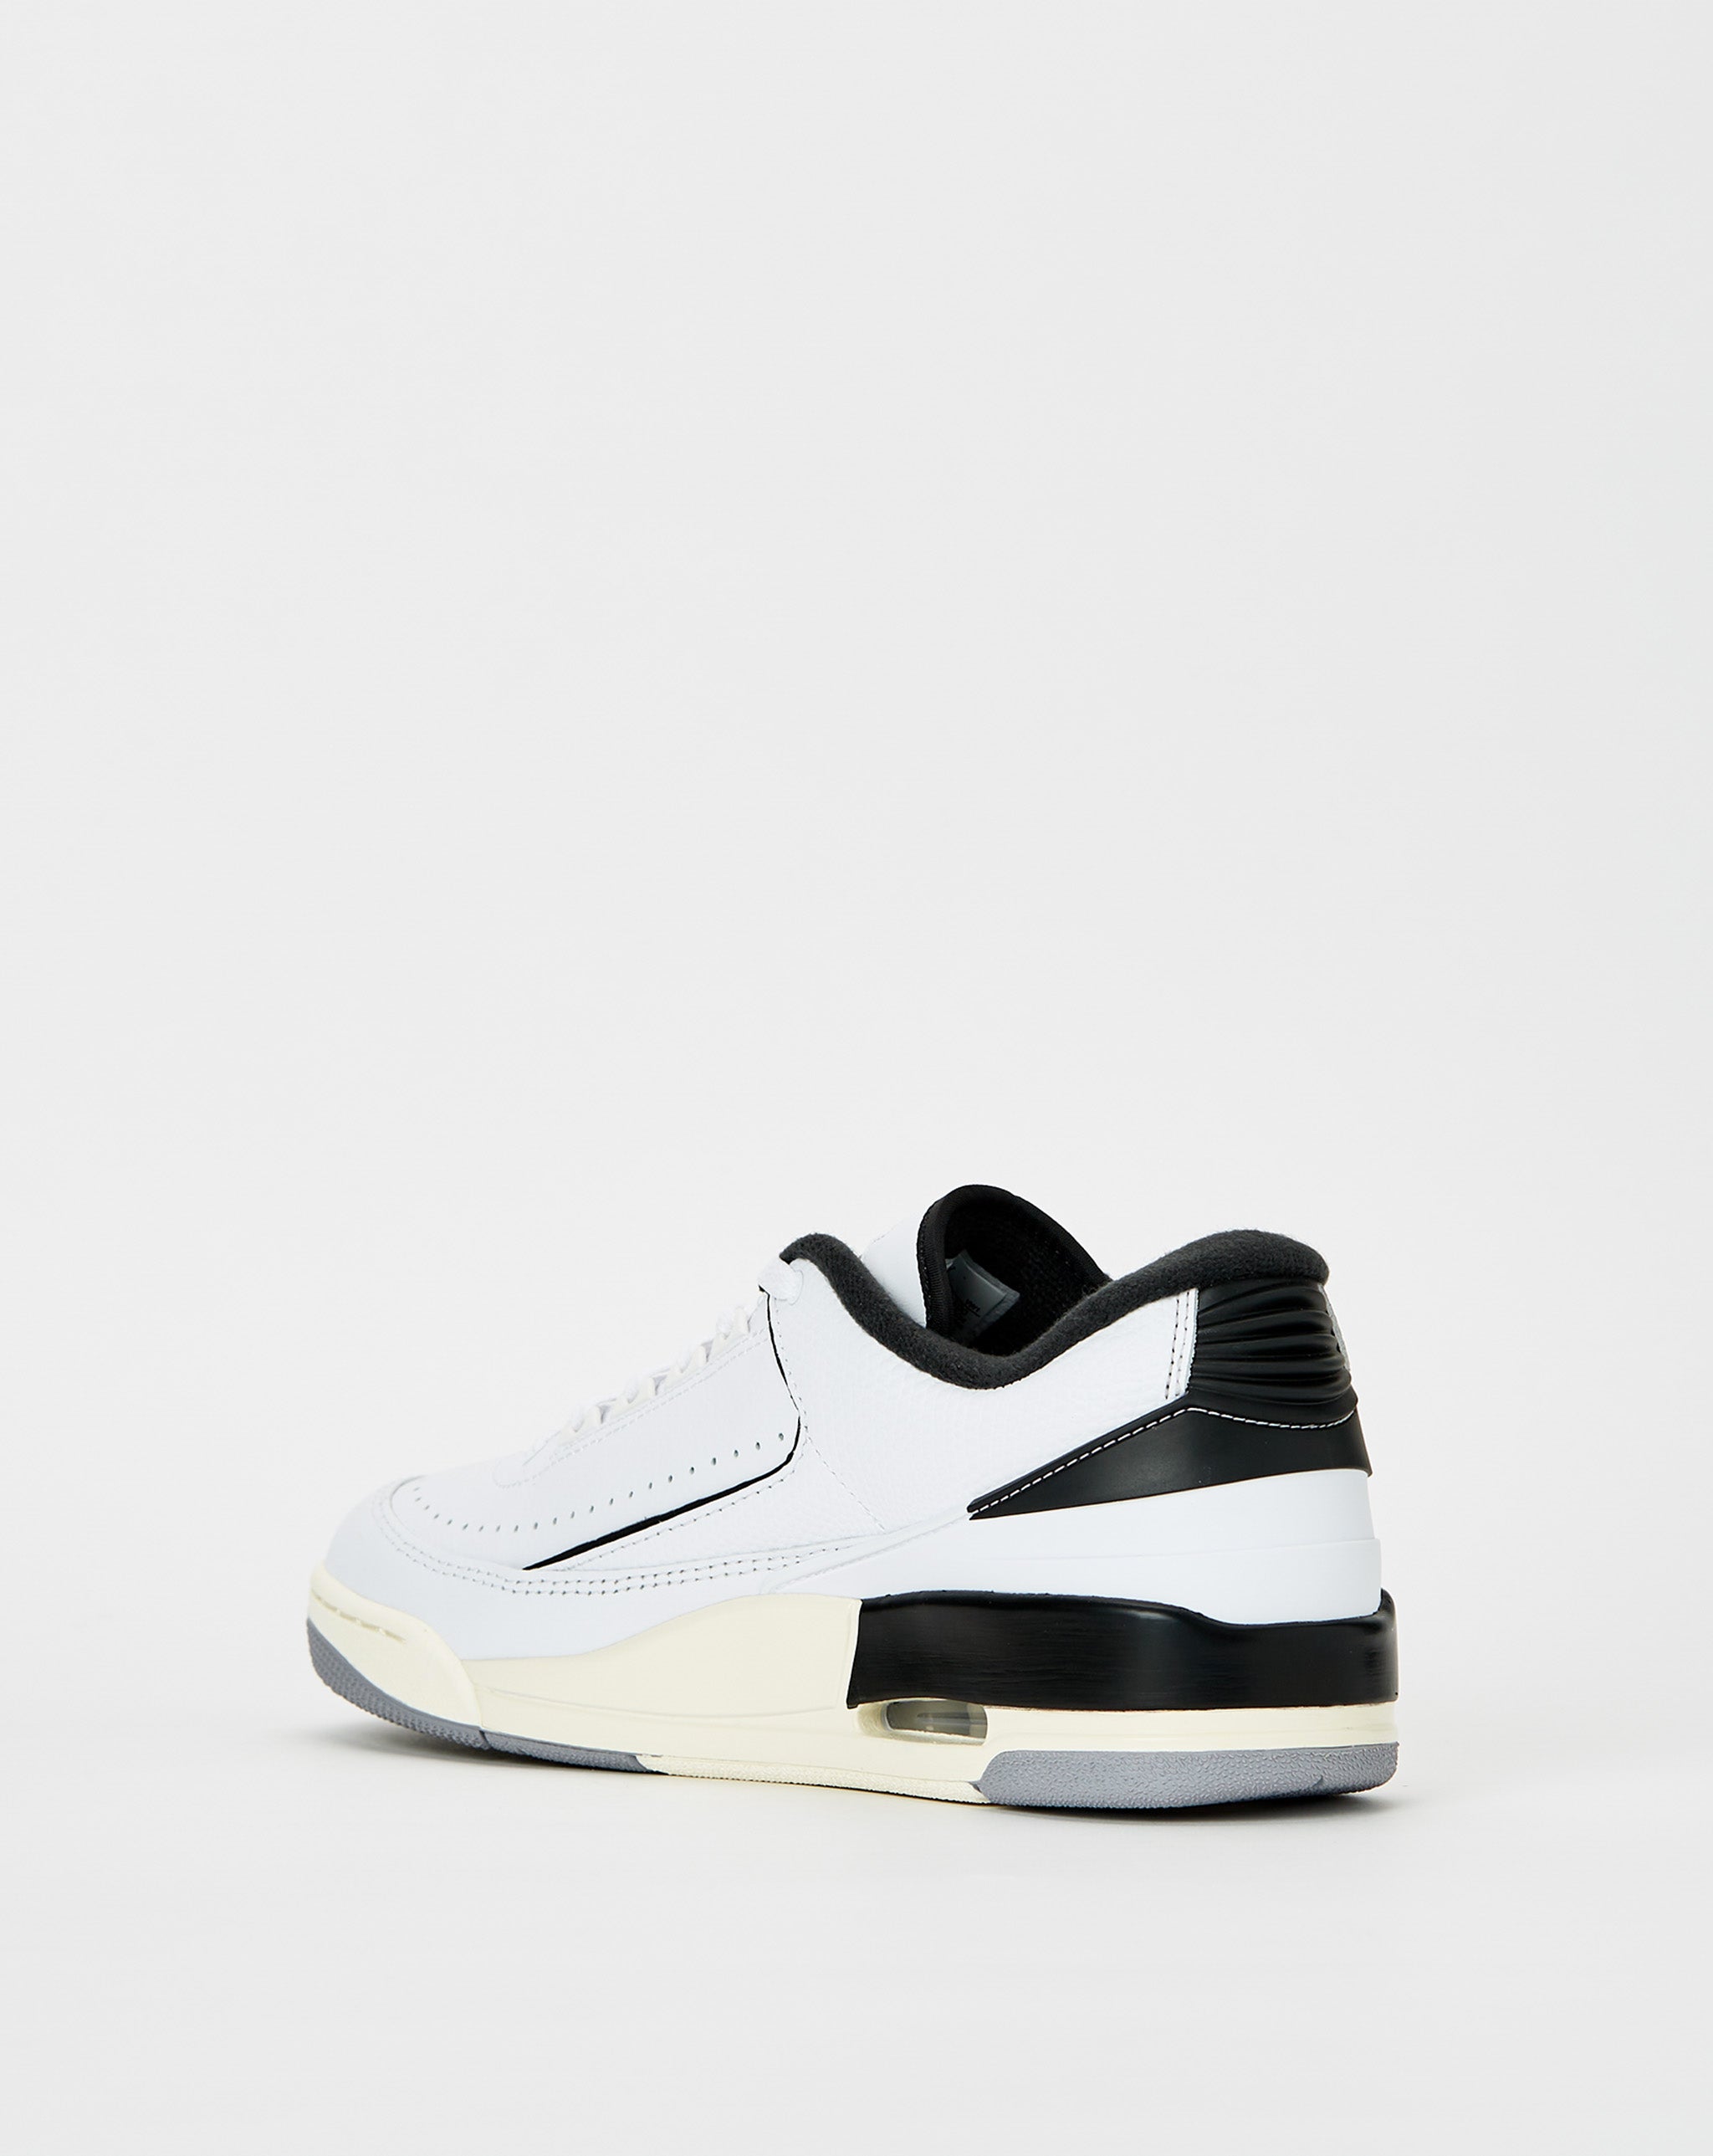 Air Jordan 2014 Womens Nike Basketball Shoes  - Cheap Urlfreeze Jordan outlet